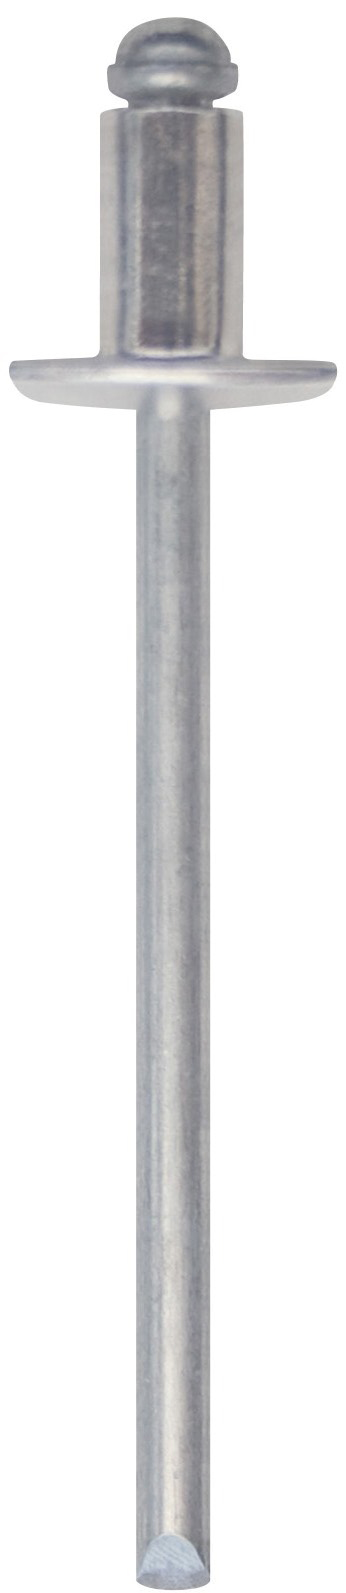 Cod. 0300004000500 - RIVEX Rivetto in alluminio